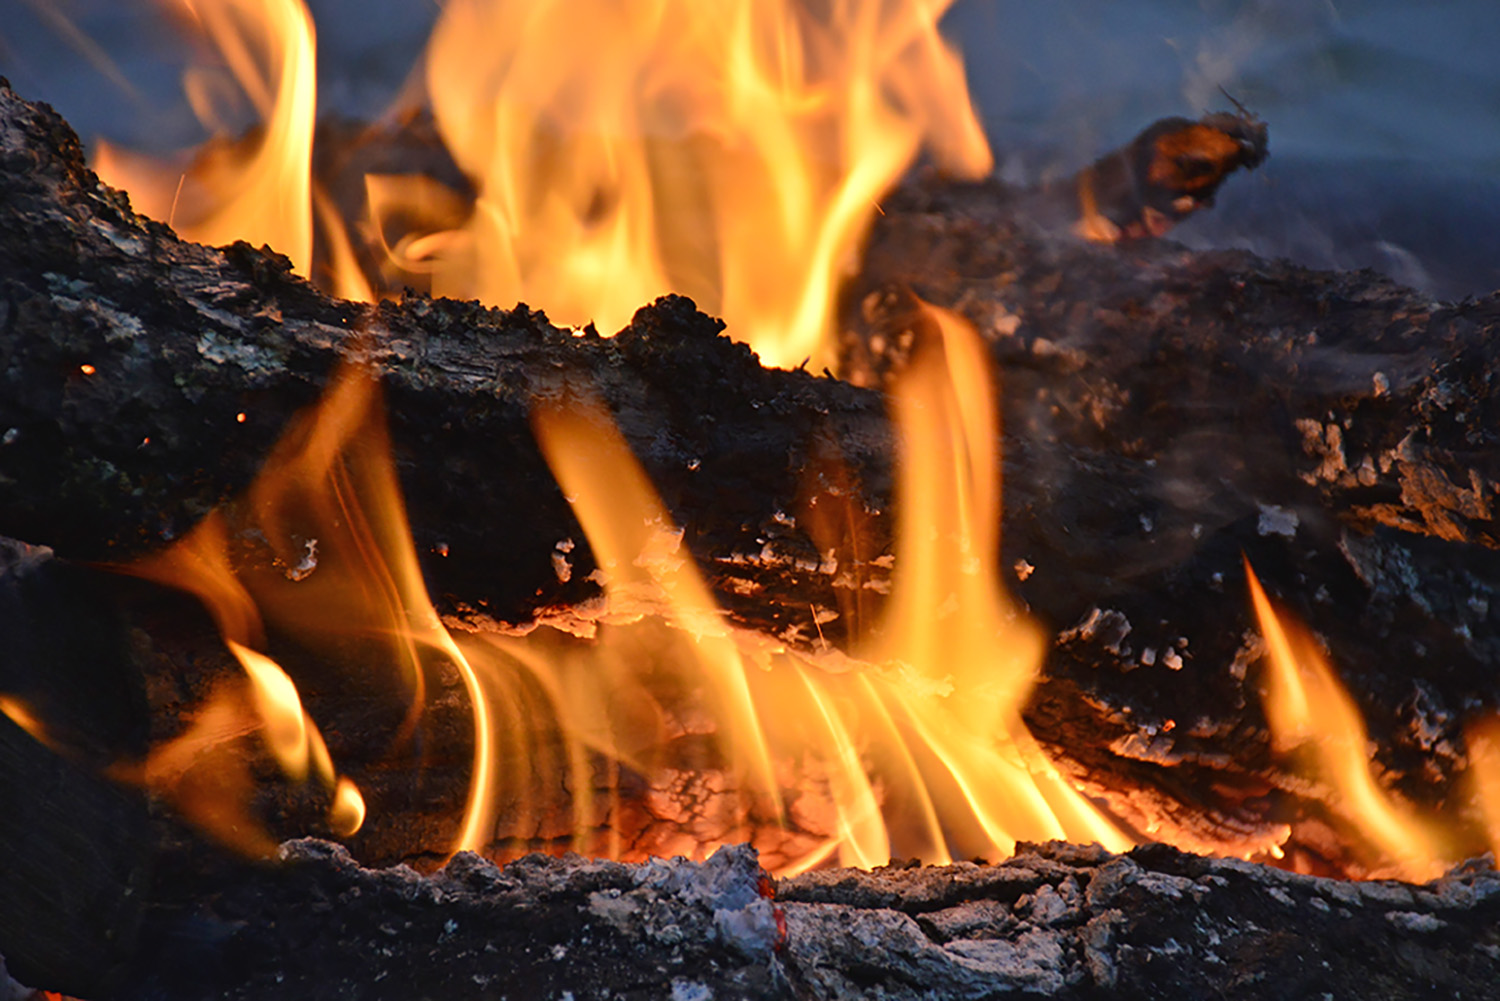 Fire_Campfire_Firepit_Logs_Burning_Flame_Hot_Closeup.jpg